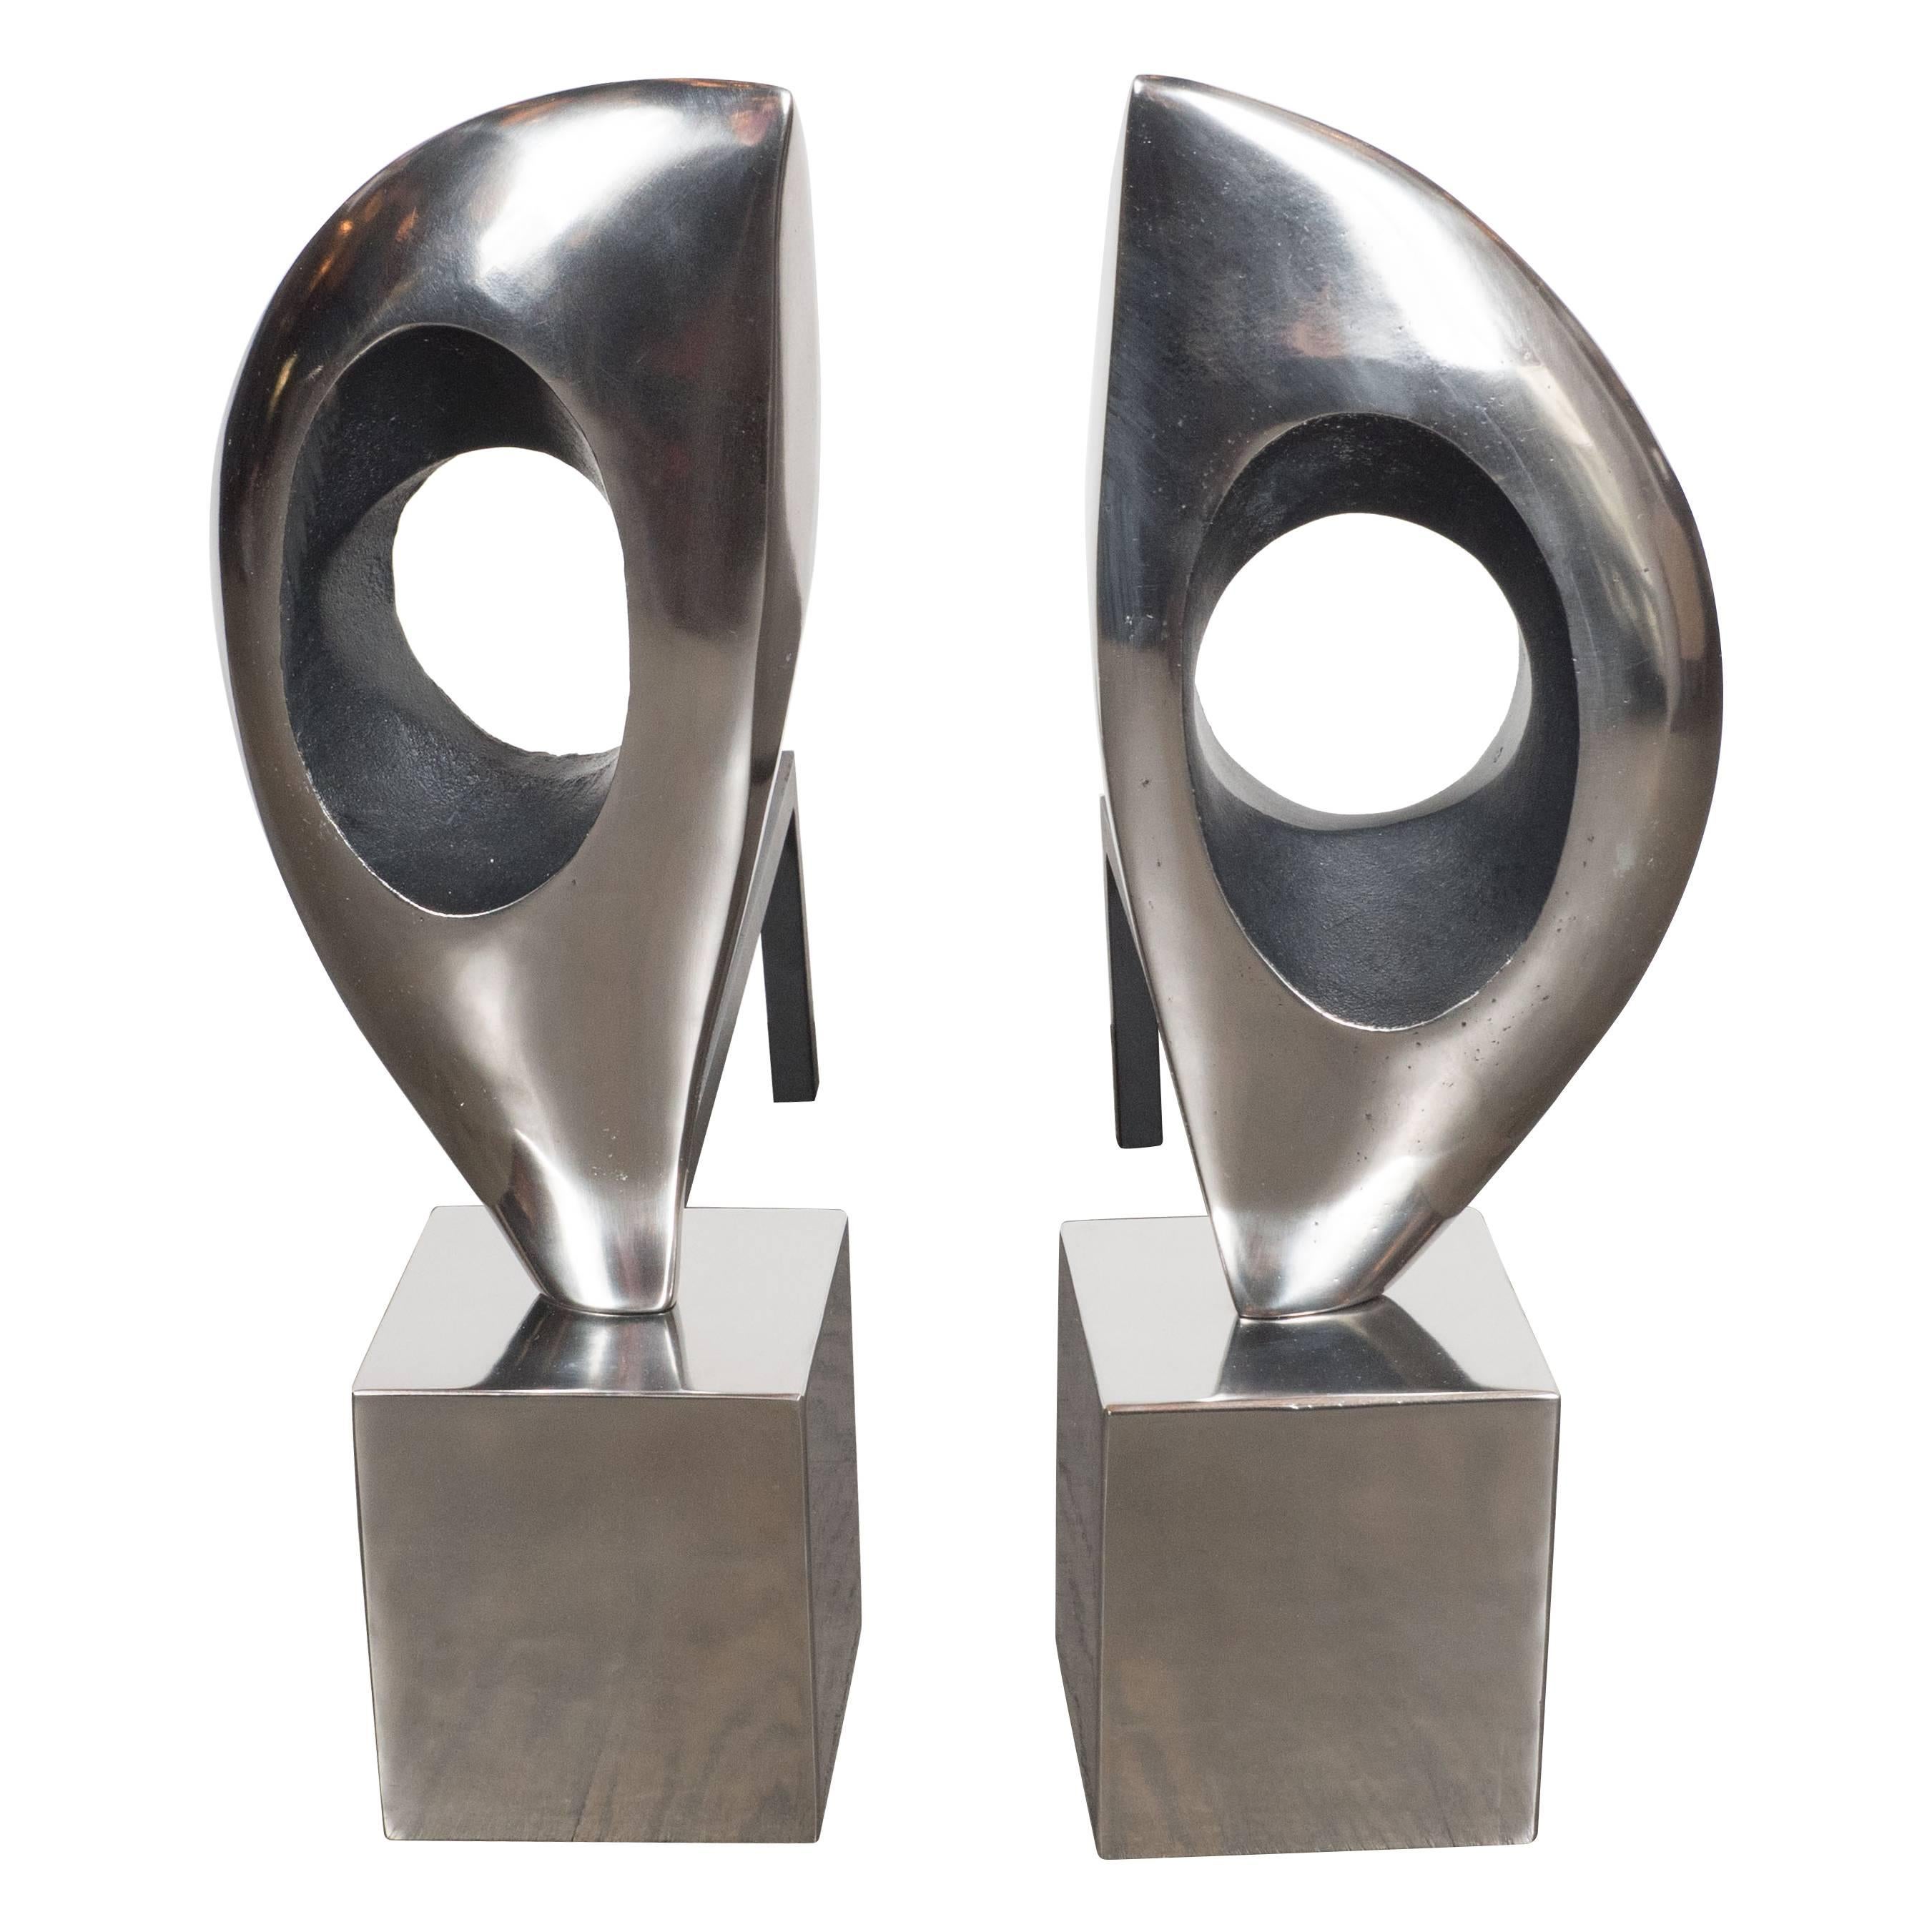 Pair of Organic Modernist Sculptural Andirons in Nickel & Black Enamel